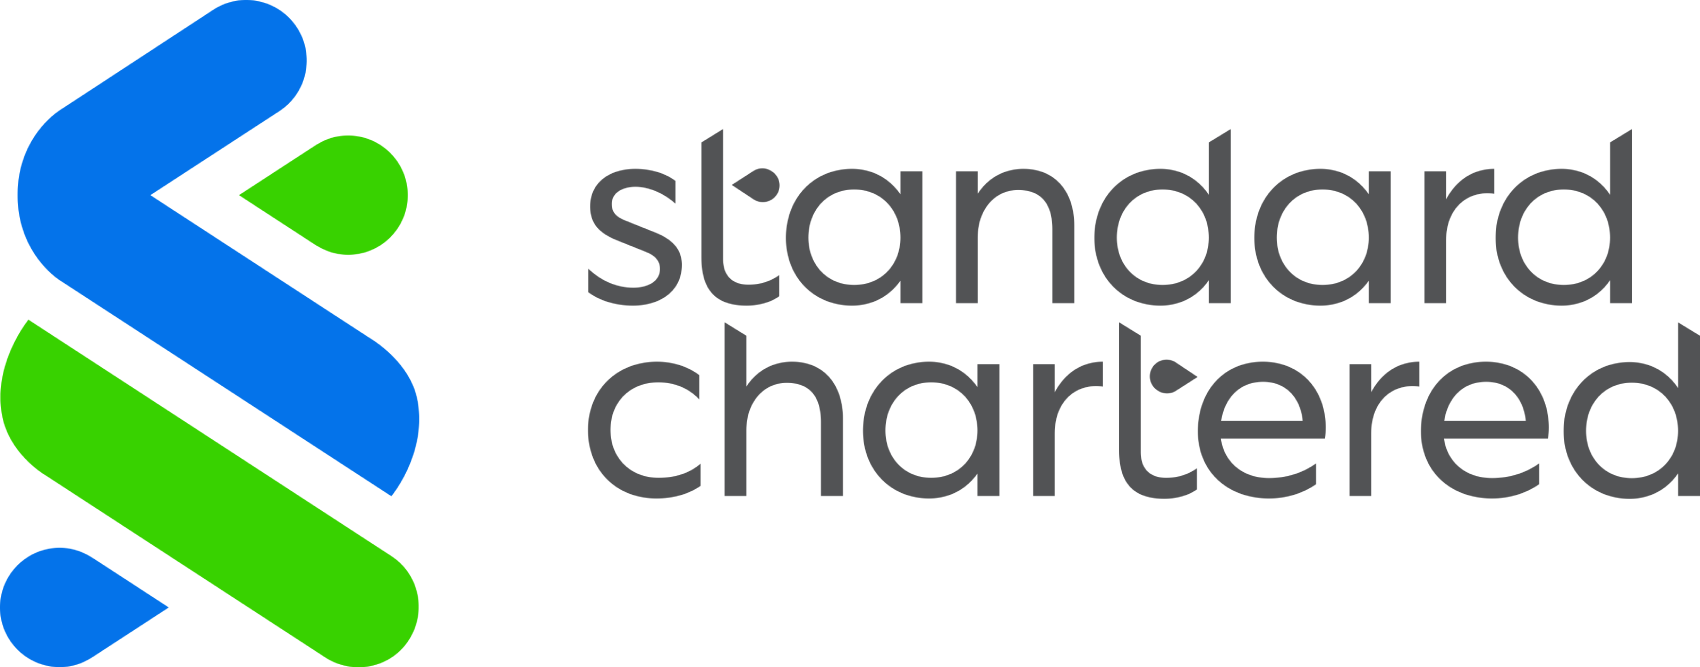 Standard Chartered logo large (transparent PNG)